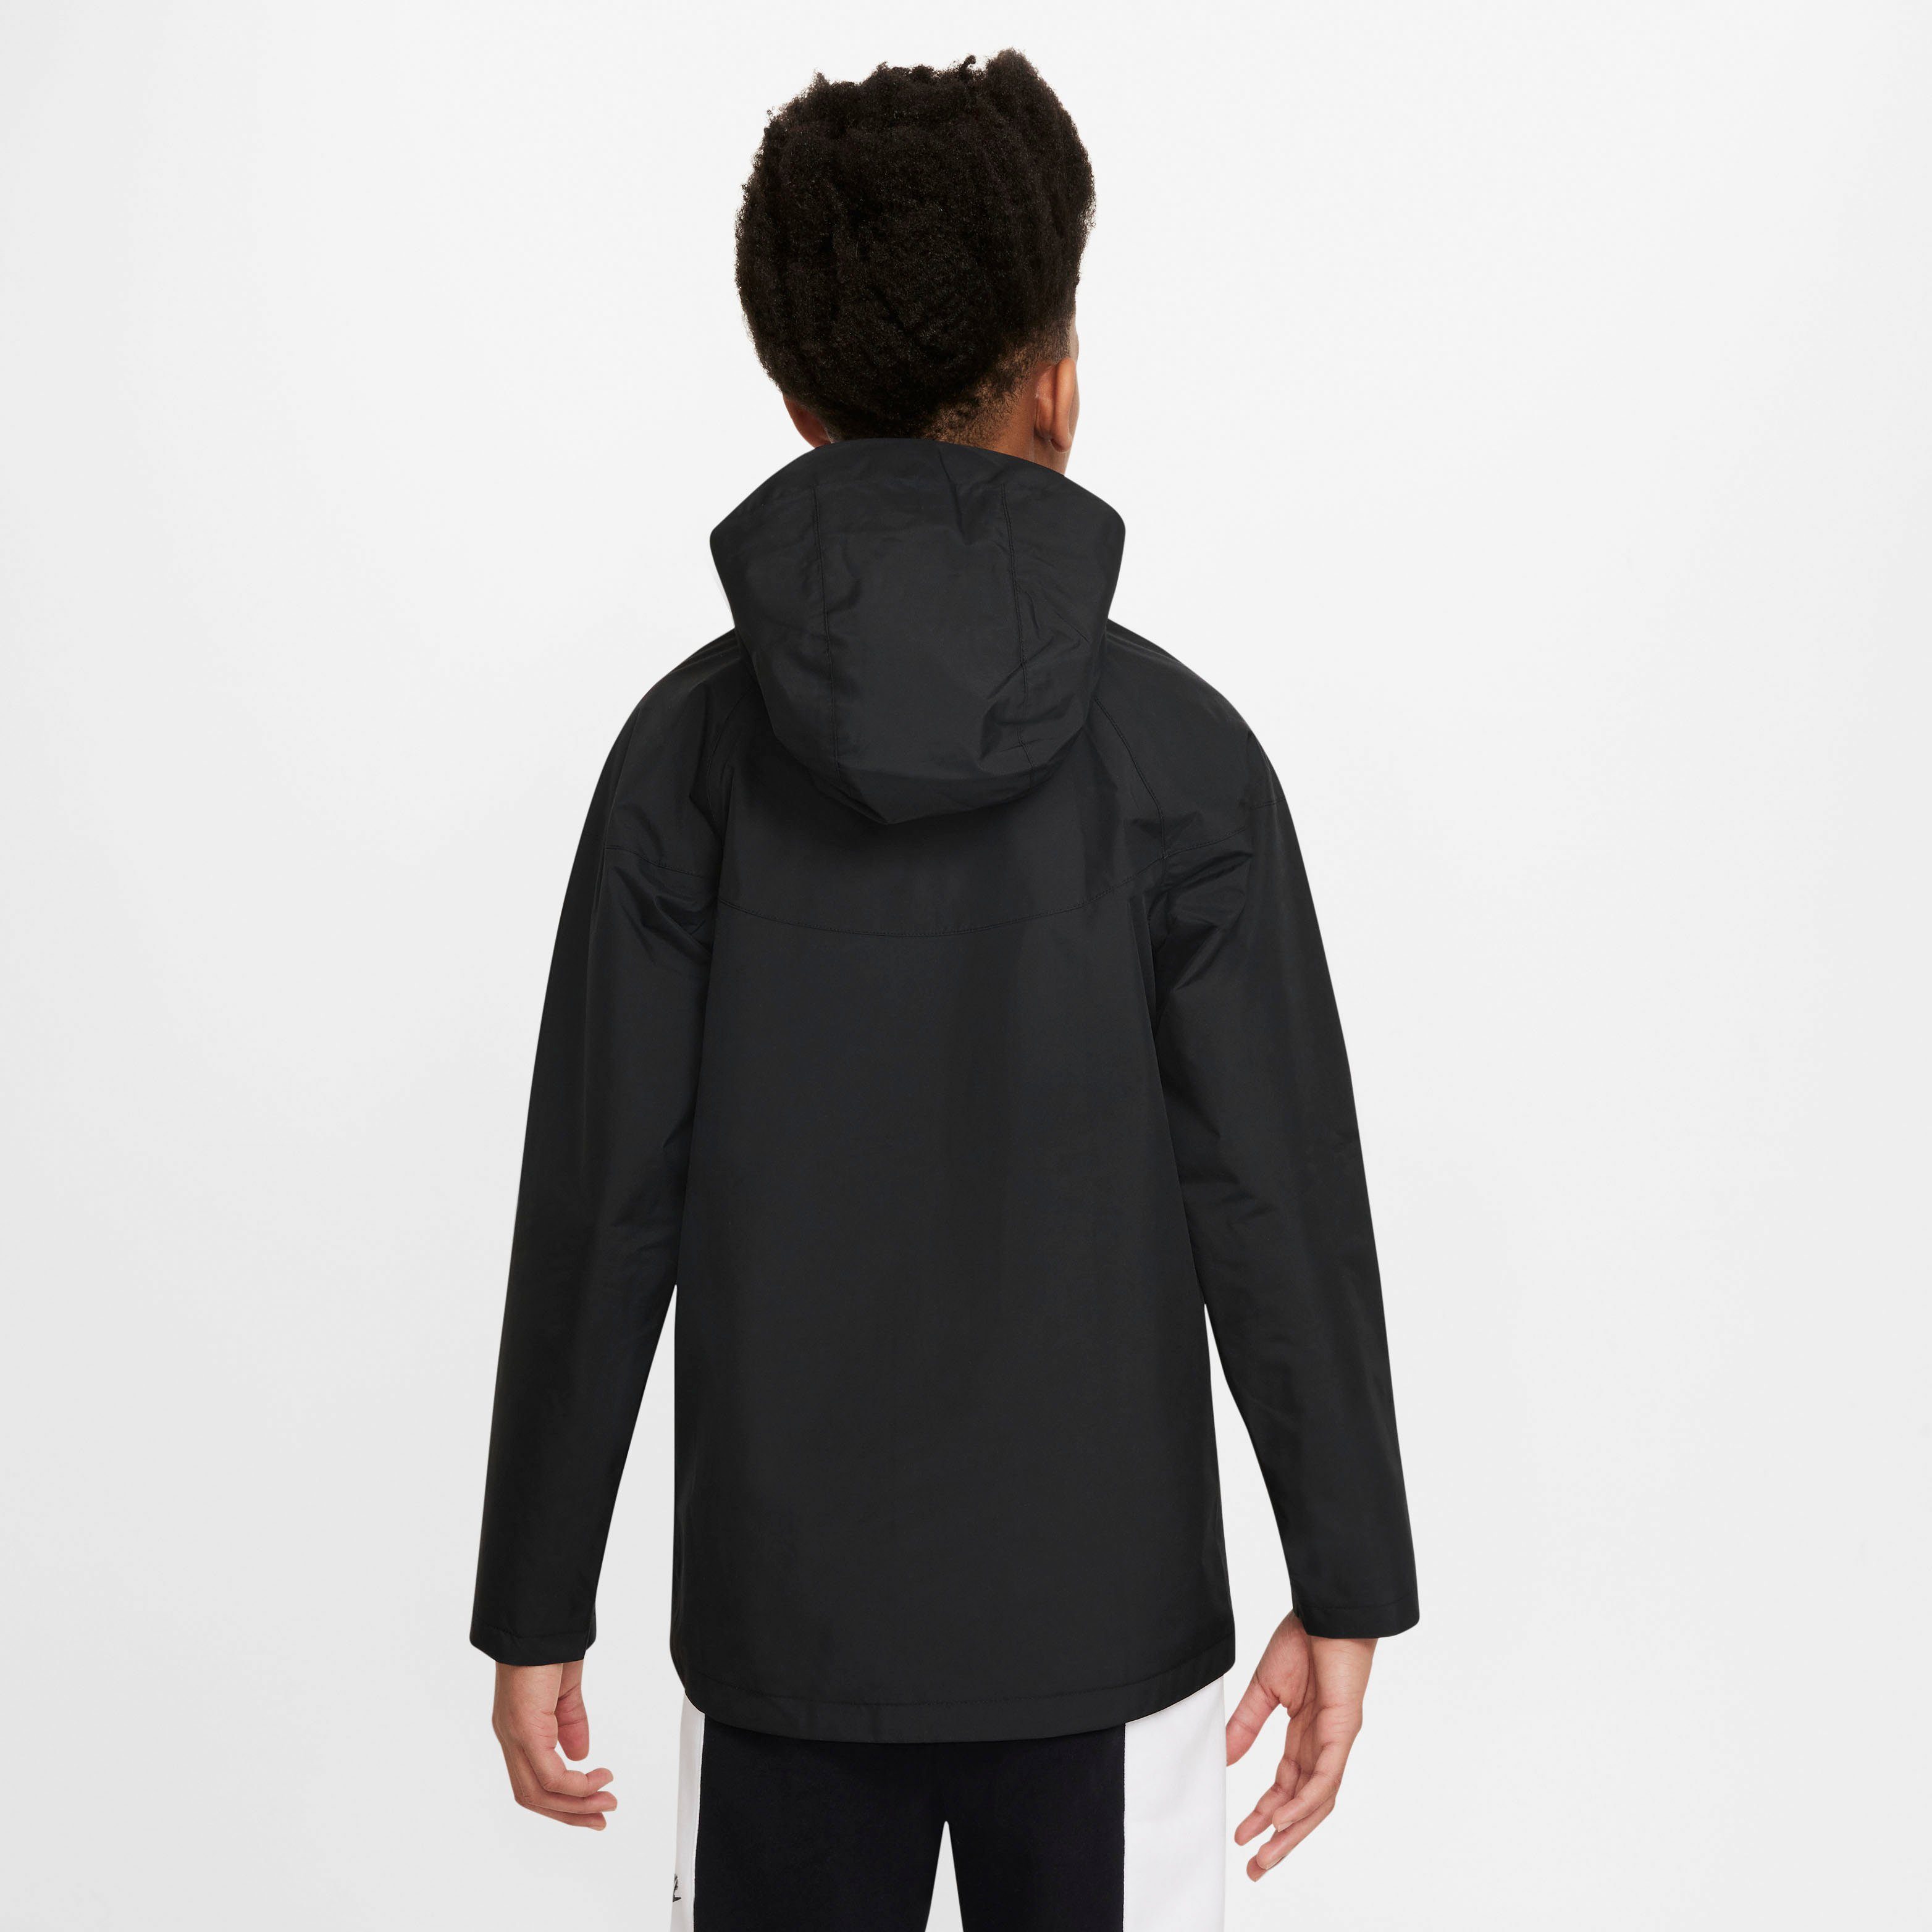 (Boys) Kids' Big Windbreaker Storm-FIT Sportswear Nike Windrunner Jacket BLACK/BLACK/WHITE